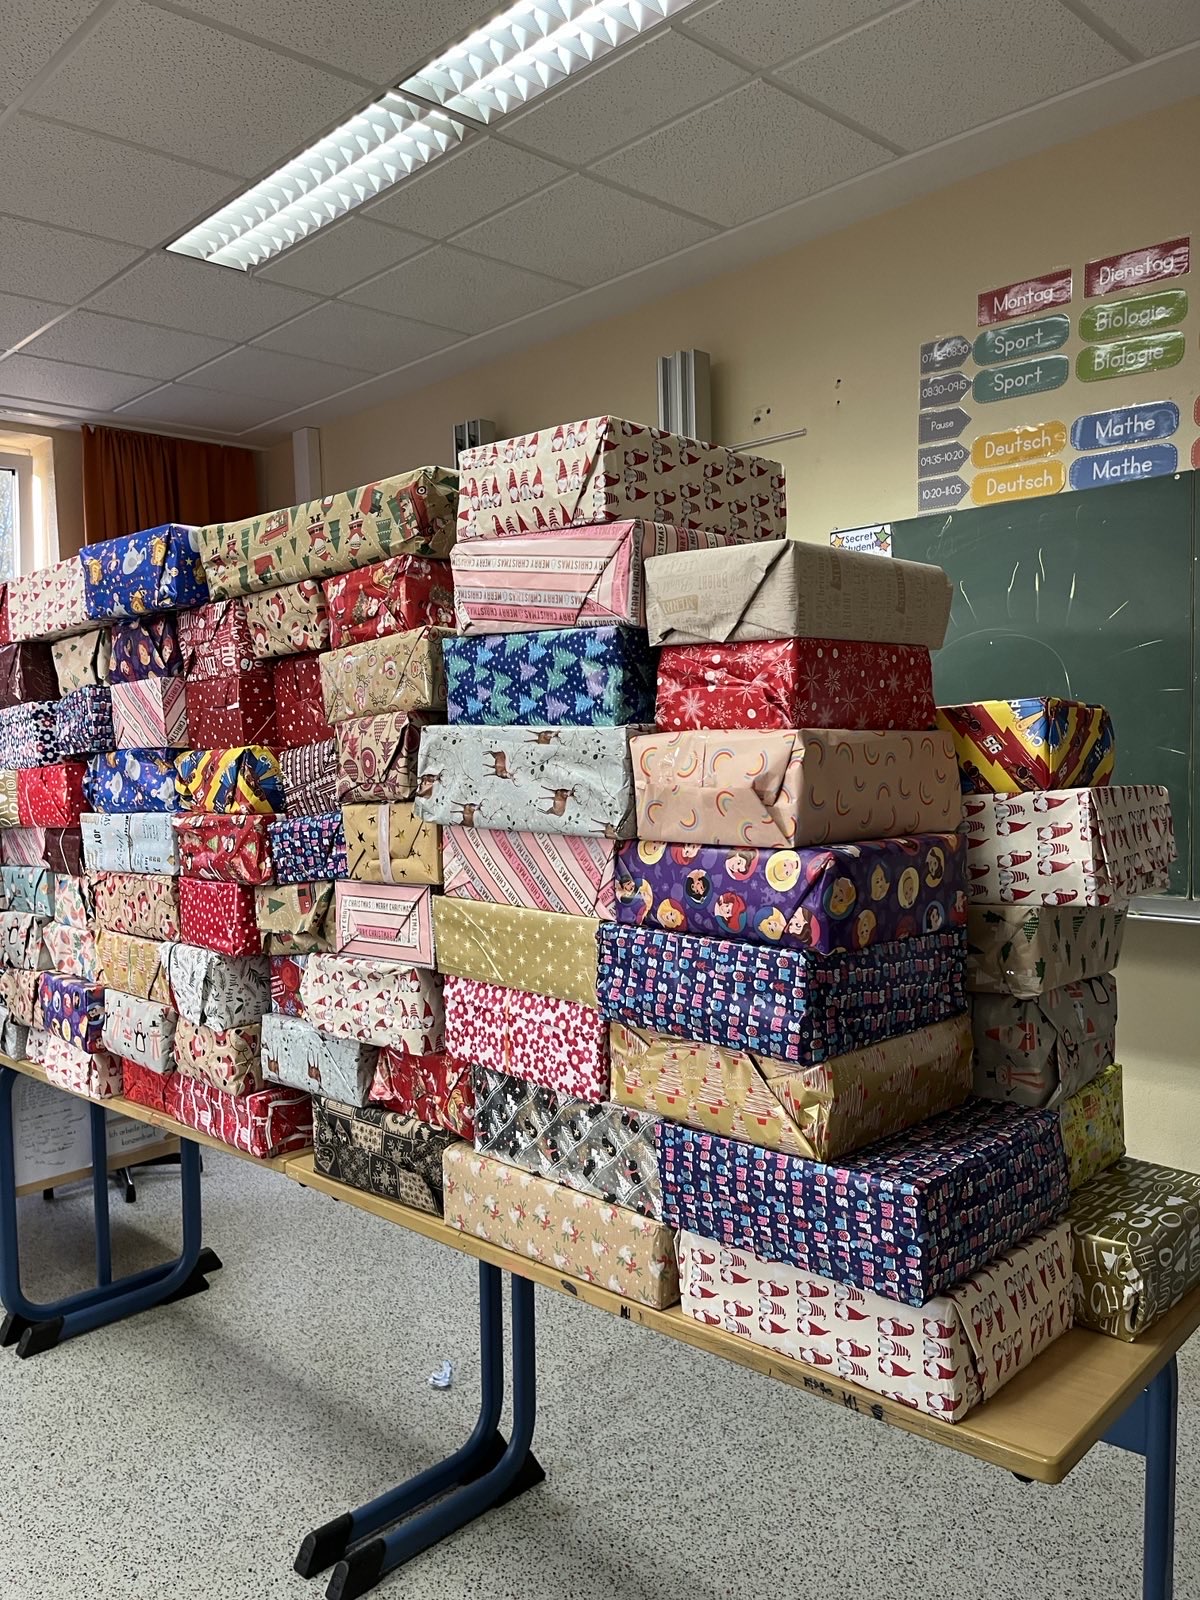 Jedes Kind verdient ein Weihnachtsgeschenk: 130 Glücksmomente für Kinder in Osteuropa